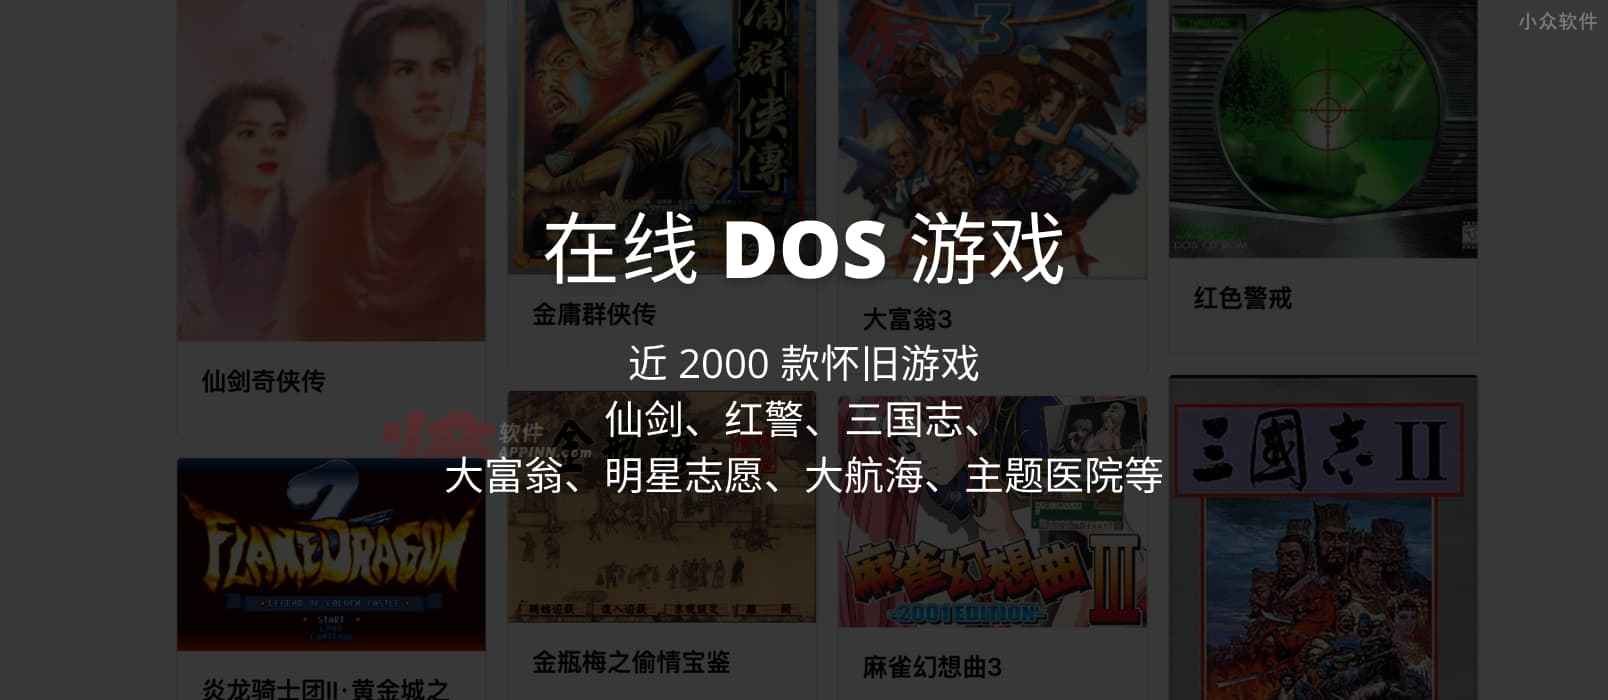 在线 DOS 游戏 – 近 2000 款怀旧游戏，仙剑、红警、三国志、大富翁、明星志愿、大航海、主题医院等